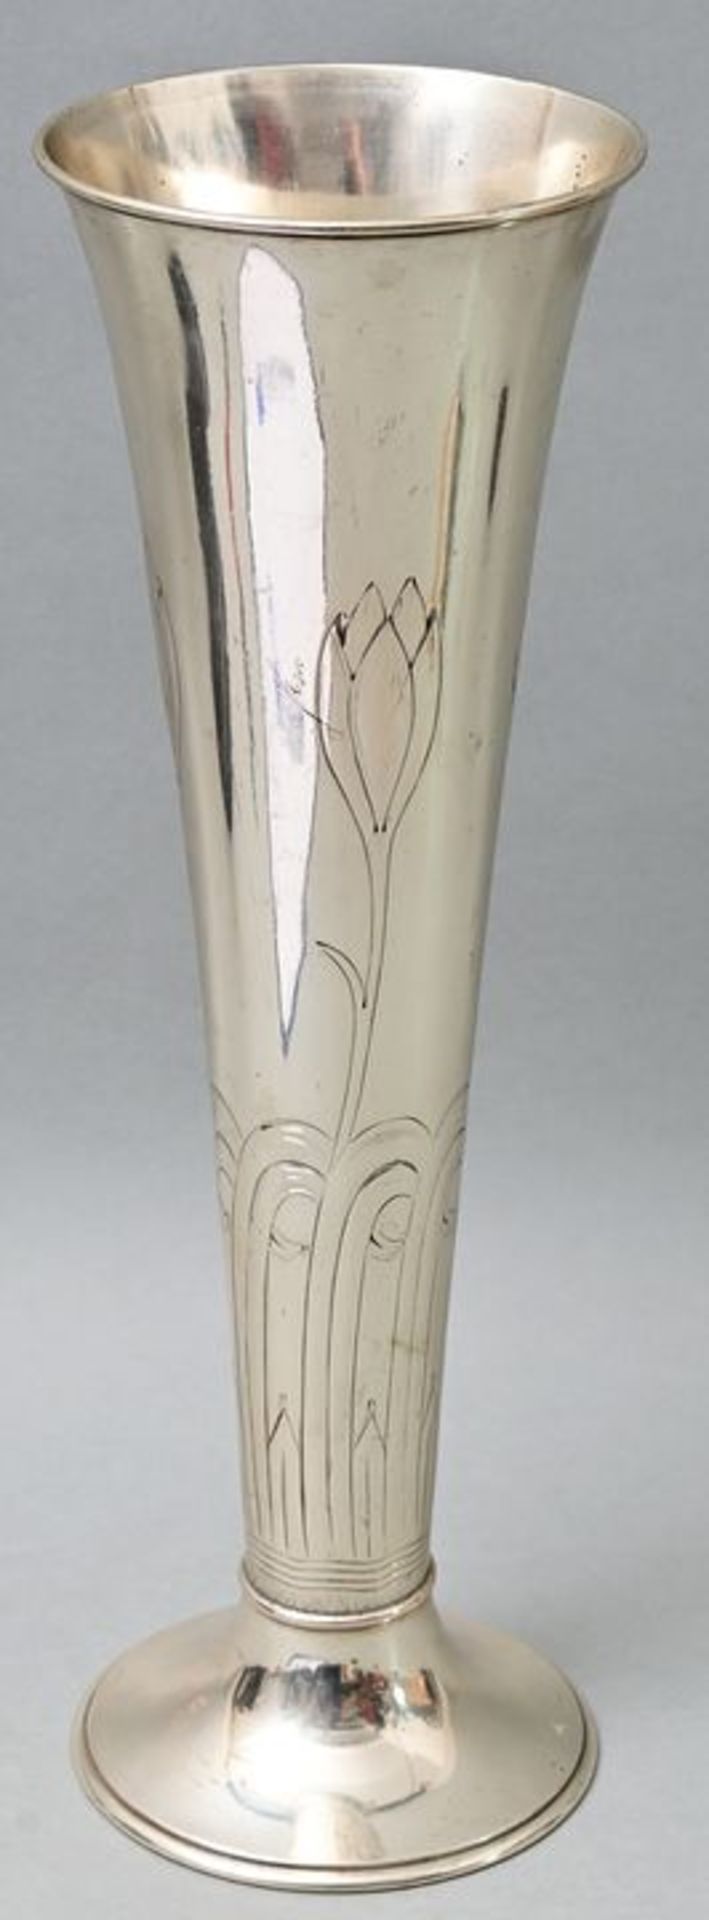 Jugendstil-Silbervase/ silver vase